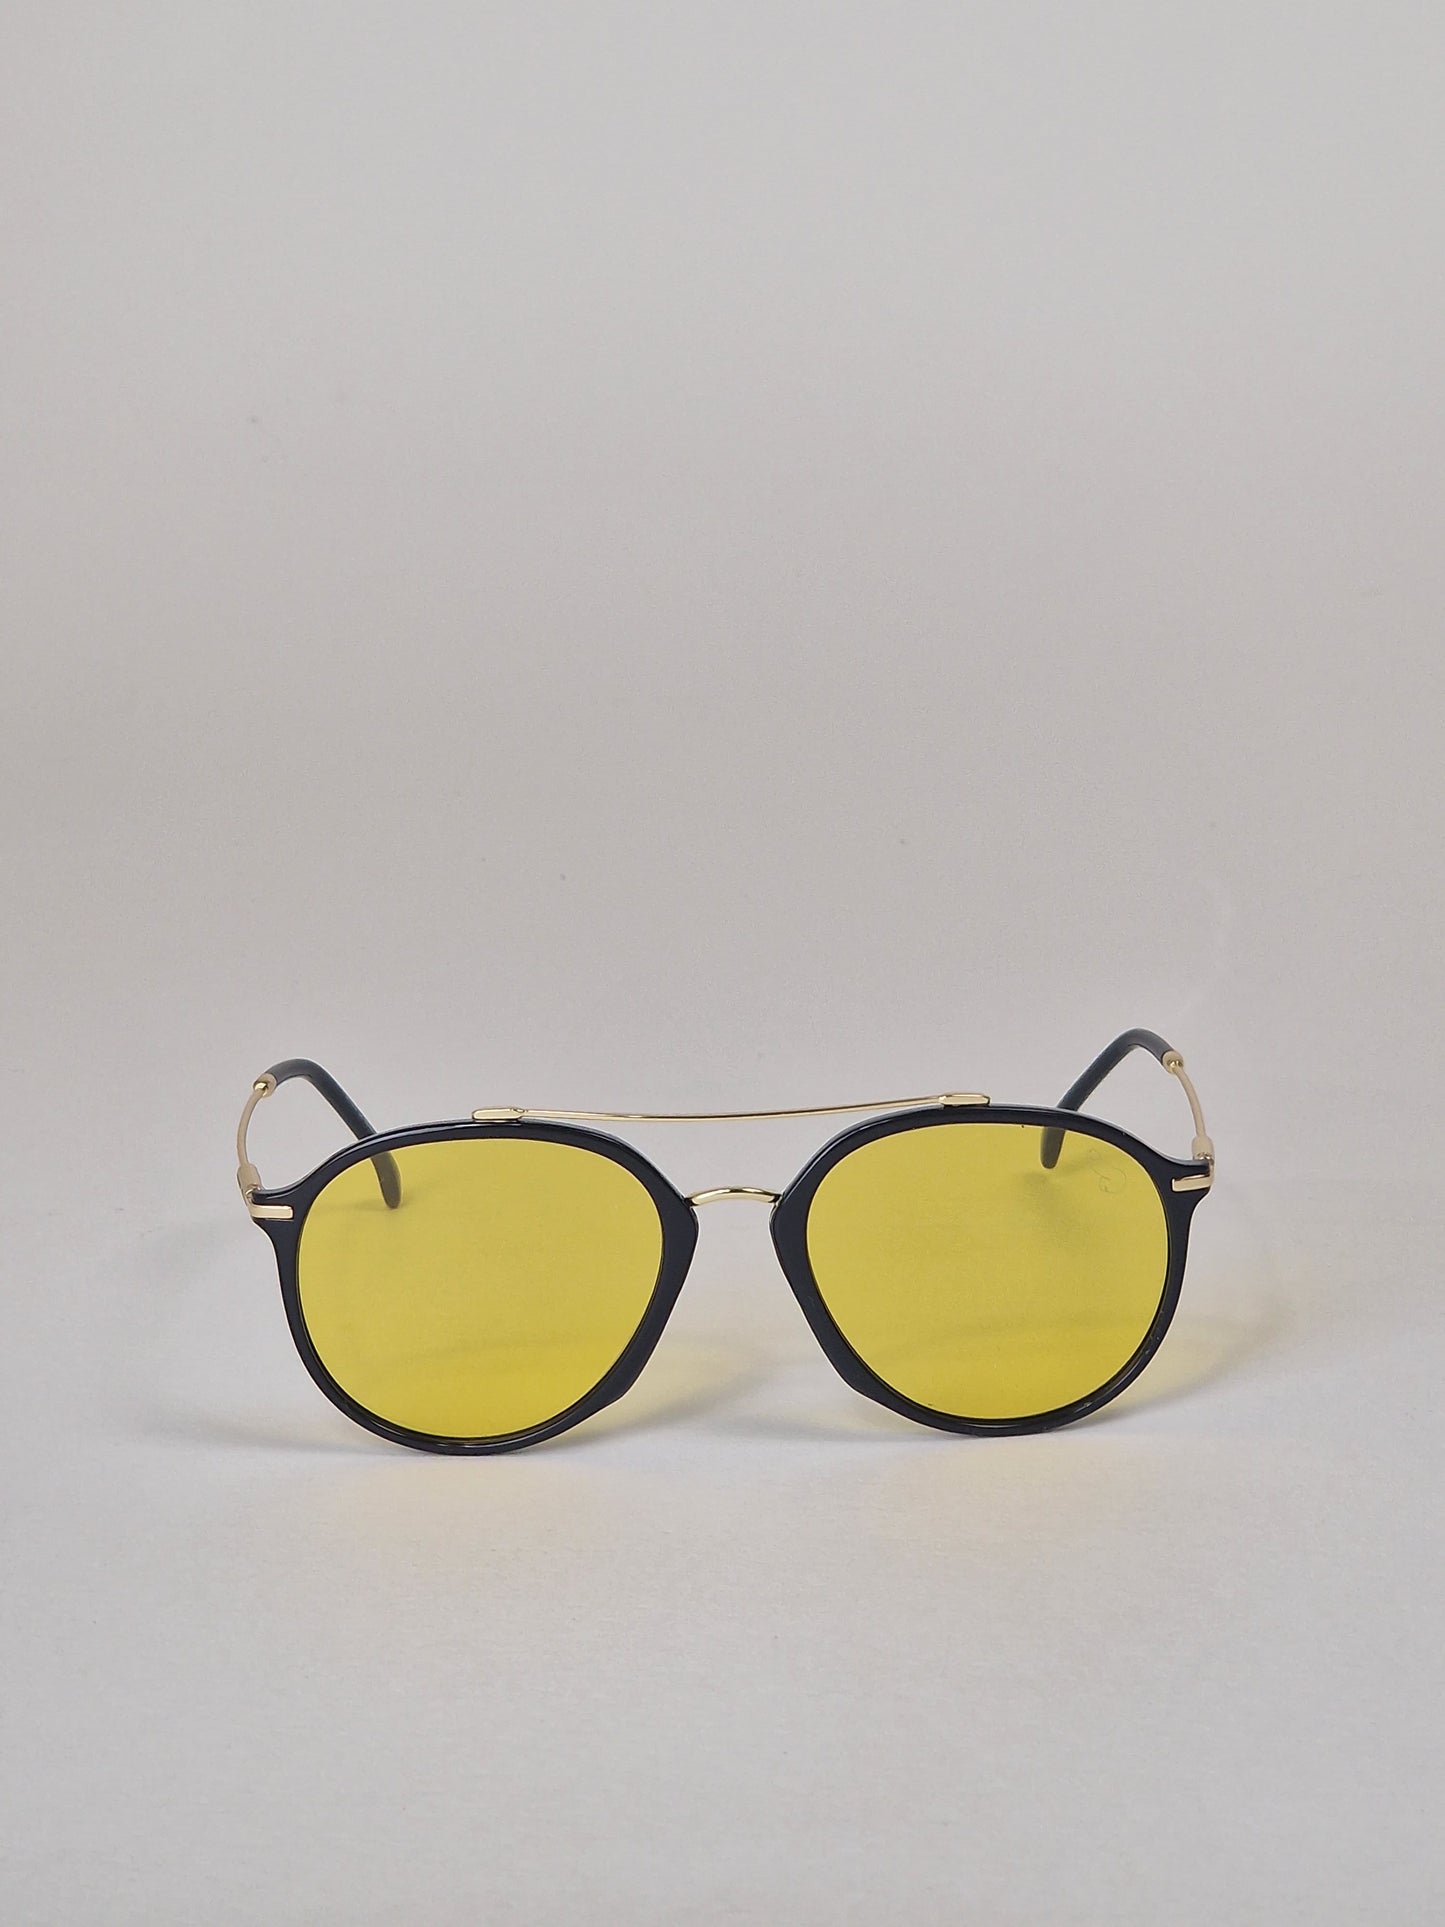 Solglasögon, modell 20 - Gultintade.